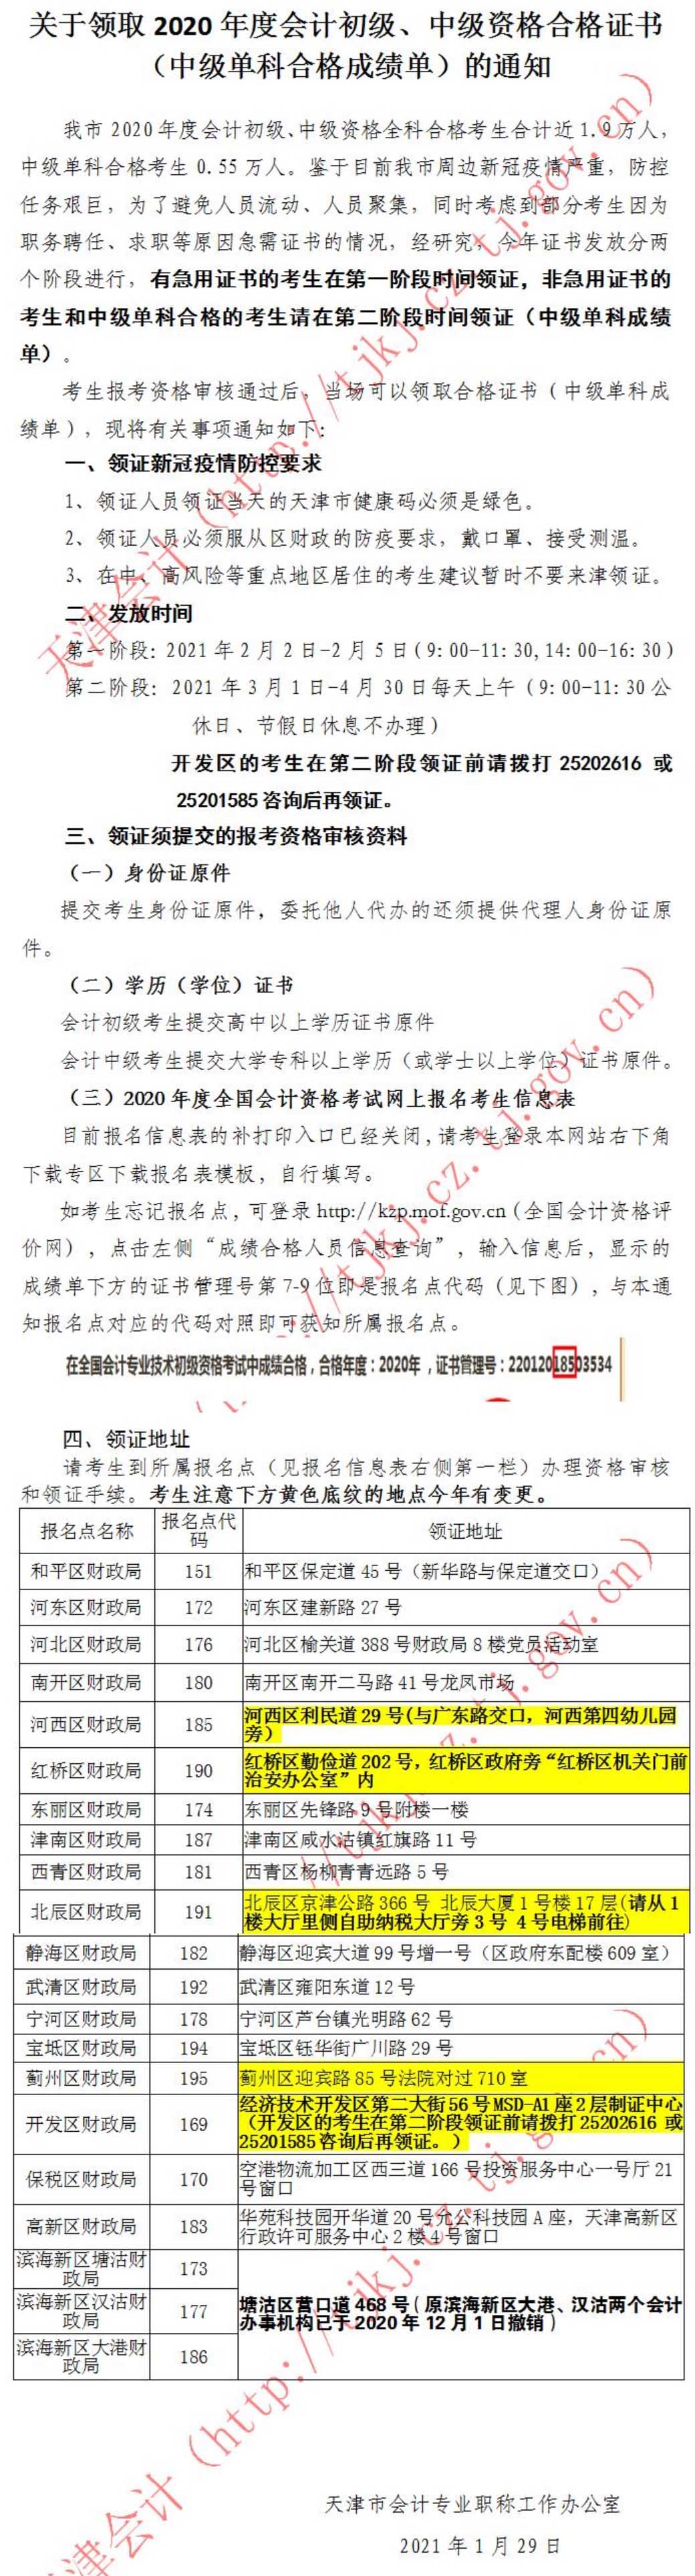 天津市2020年中级会计职称合格证书领取通知